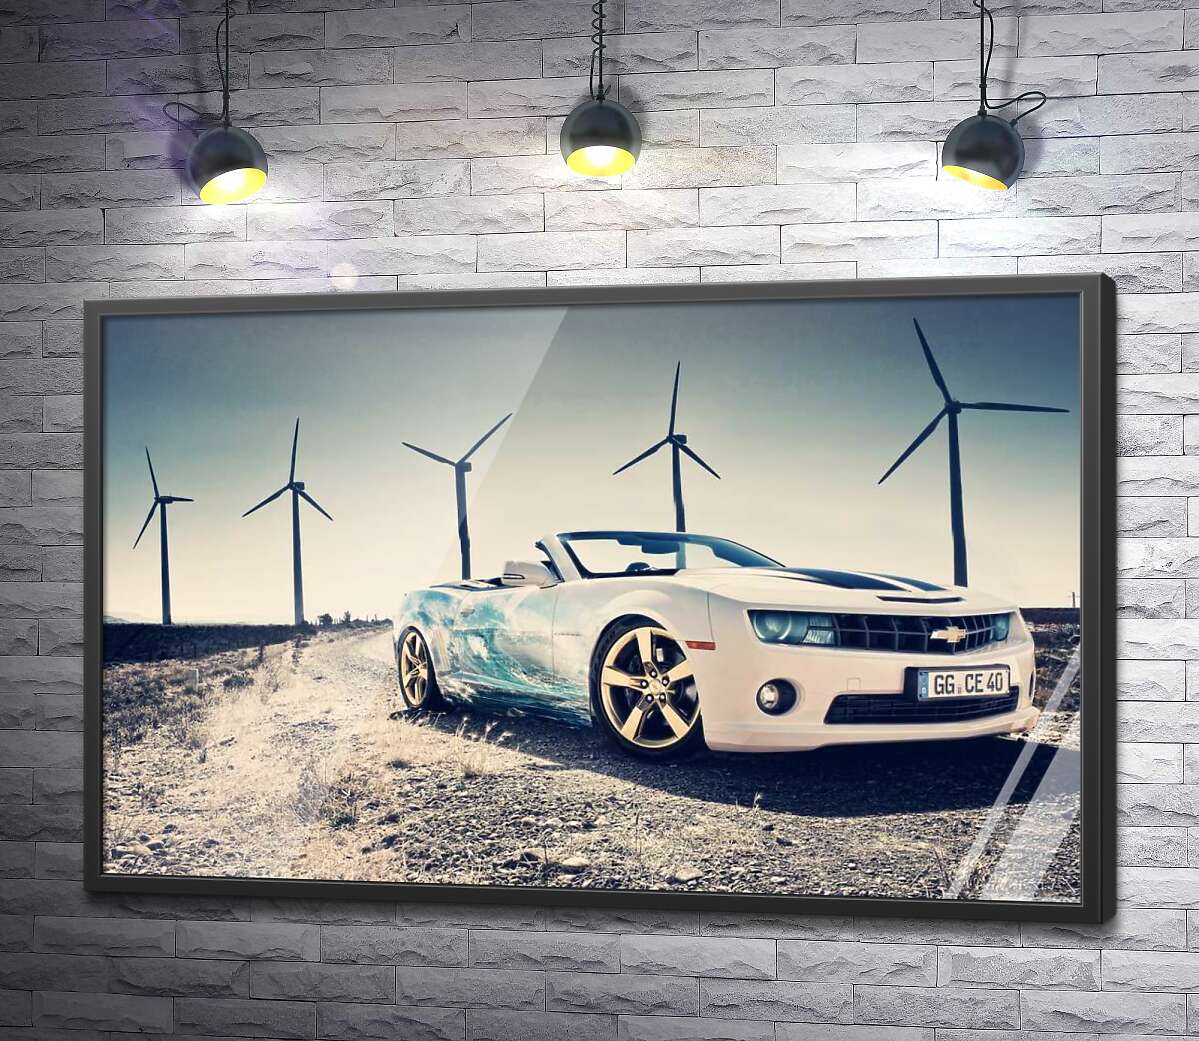 постер Белый автомобиль кабриолет Chevrolet Camaro на фоне ветряных электростанций